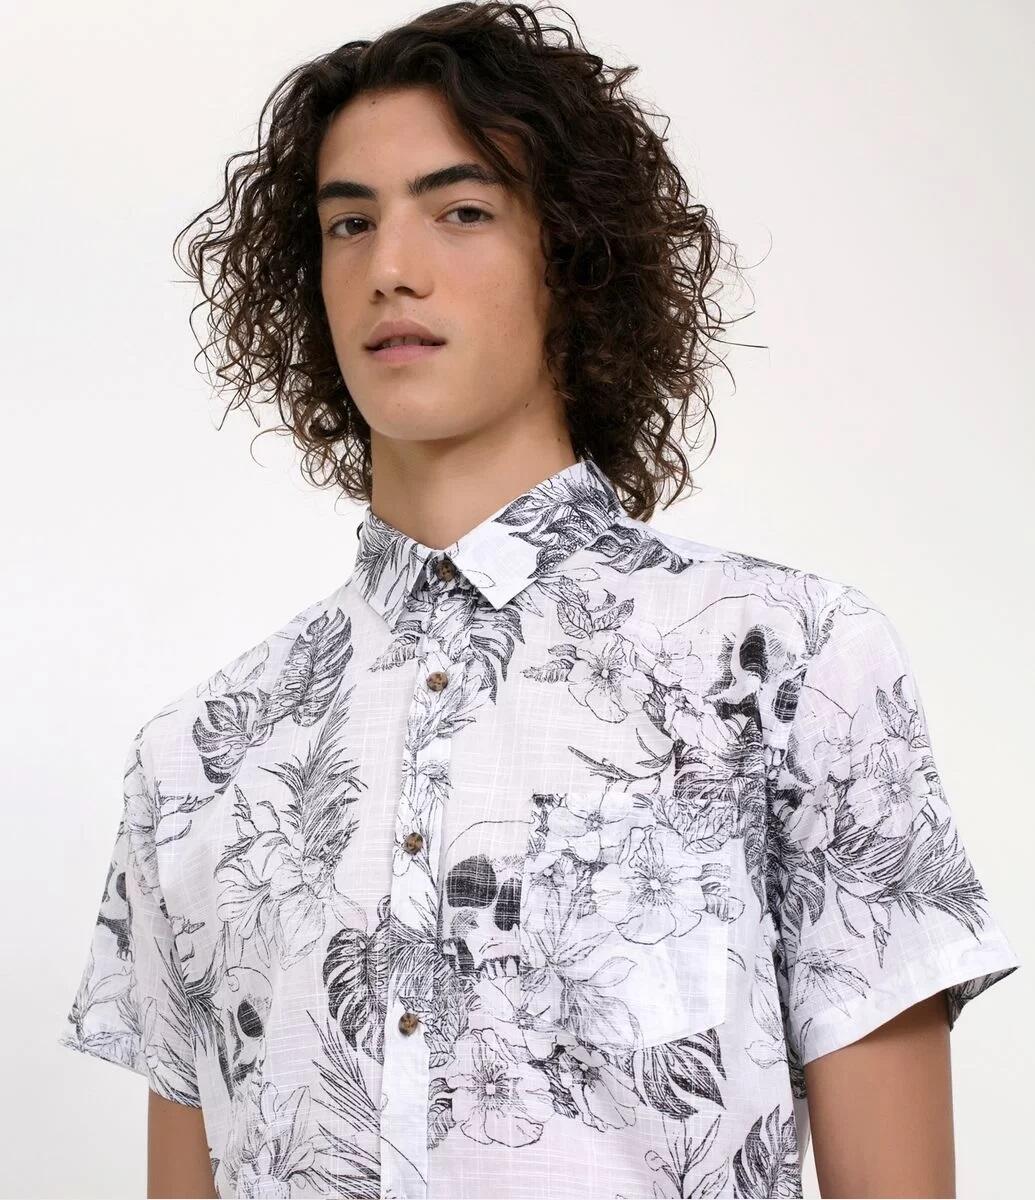 Camisa Florida Masculina: + 10 modelos para você se insirar 